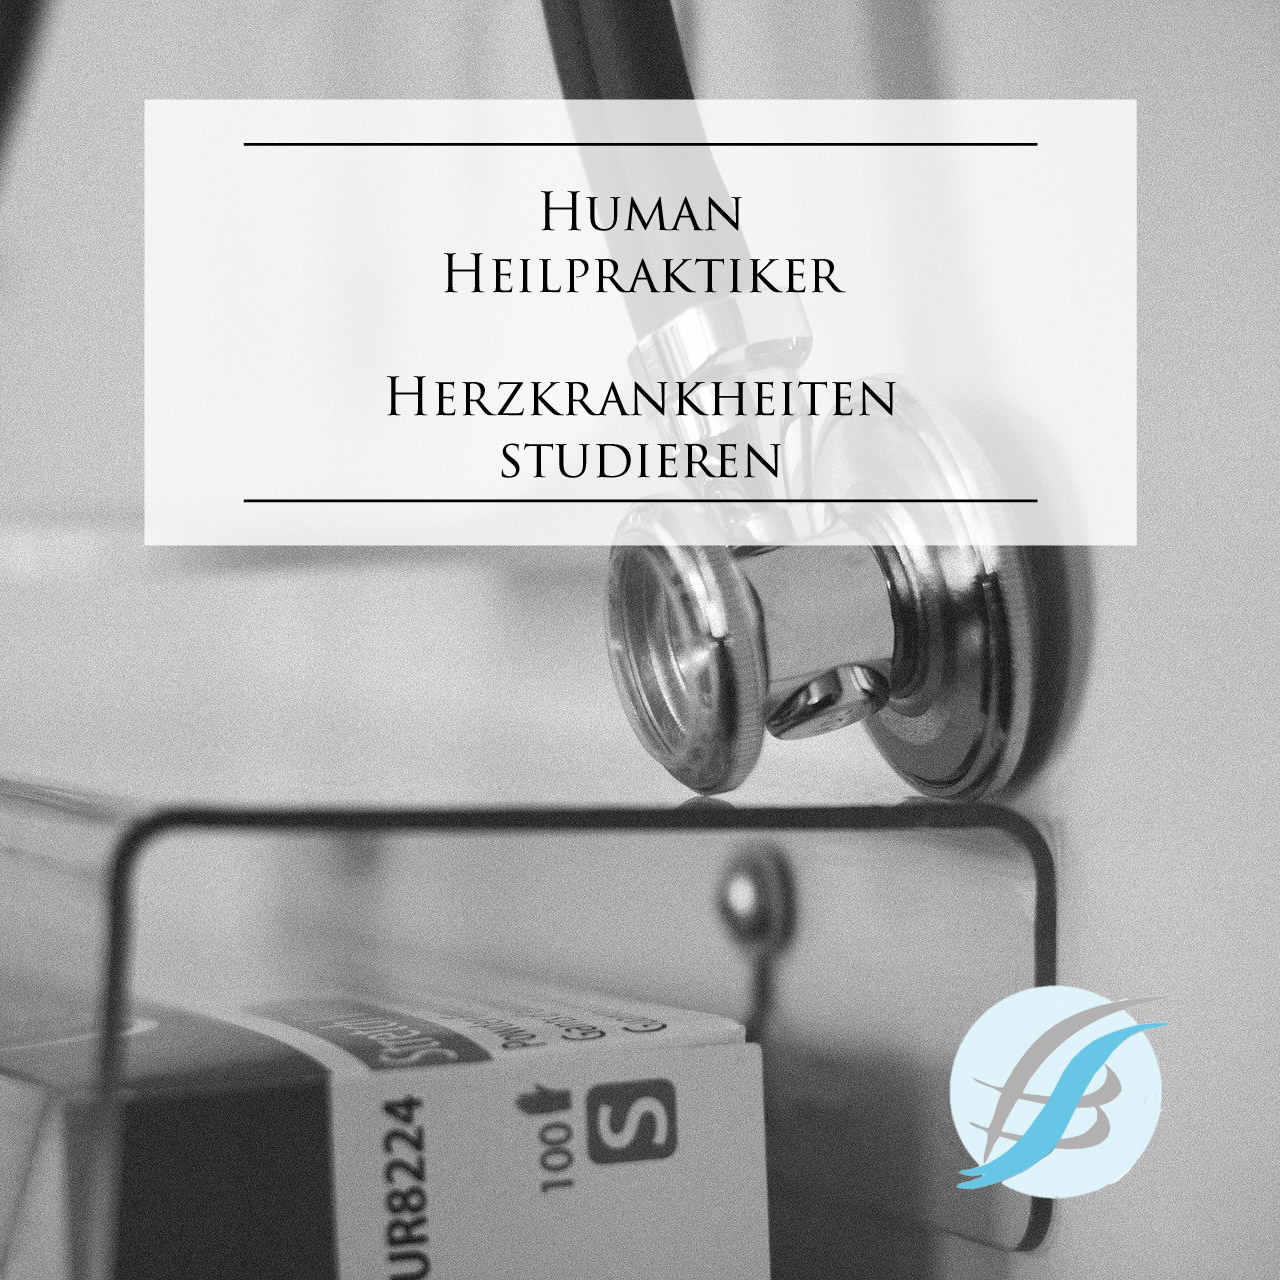 You are currently viewing Heilpraktiker Herzkrankheiten studieren